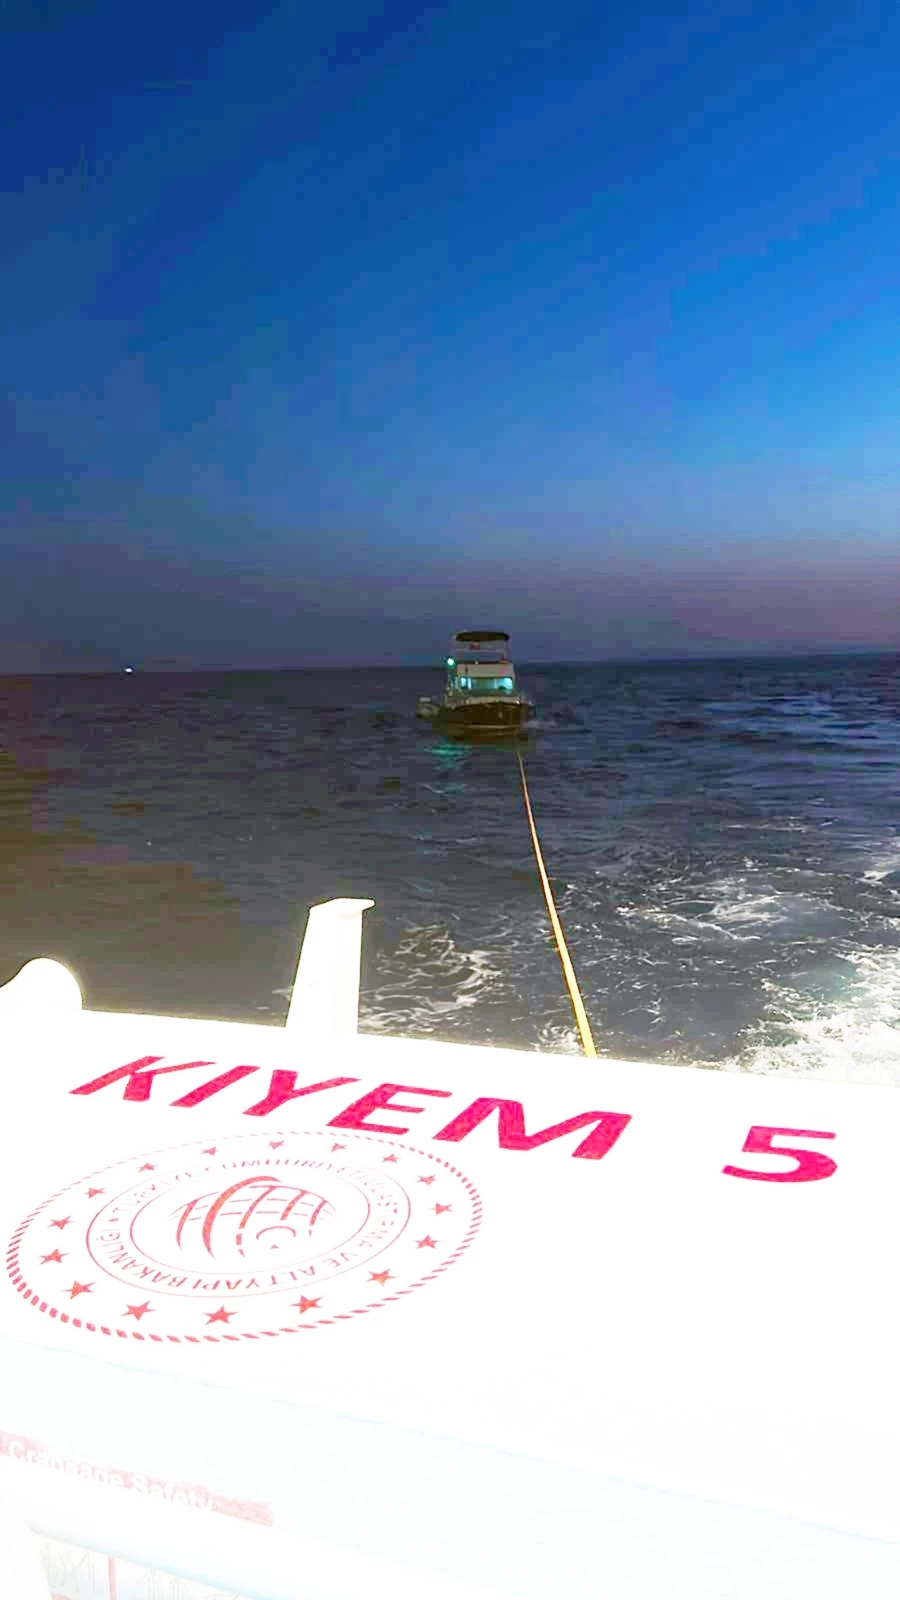  Fethiye’de arızalanan tekneyi KIYEM ekipleri kurtardı   